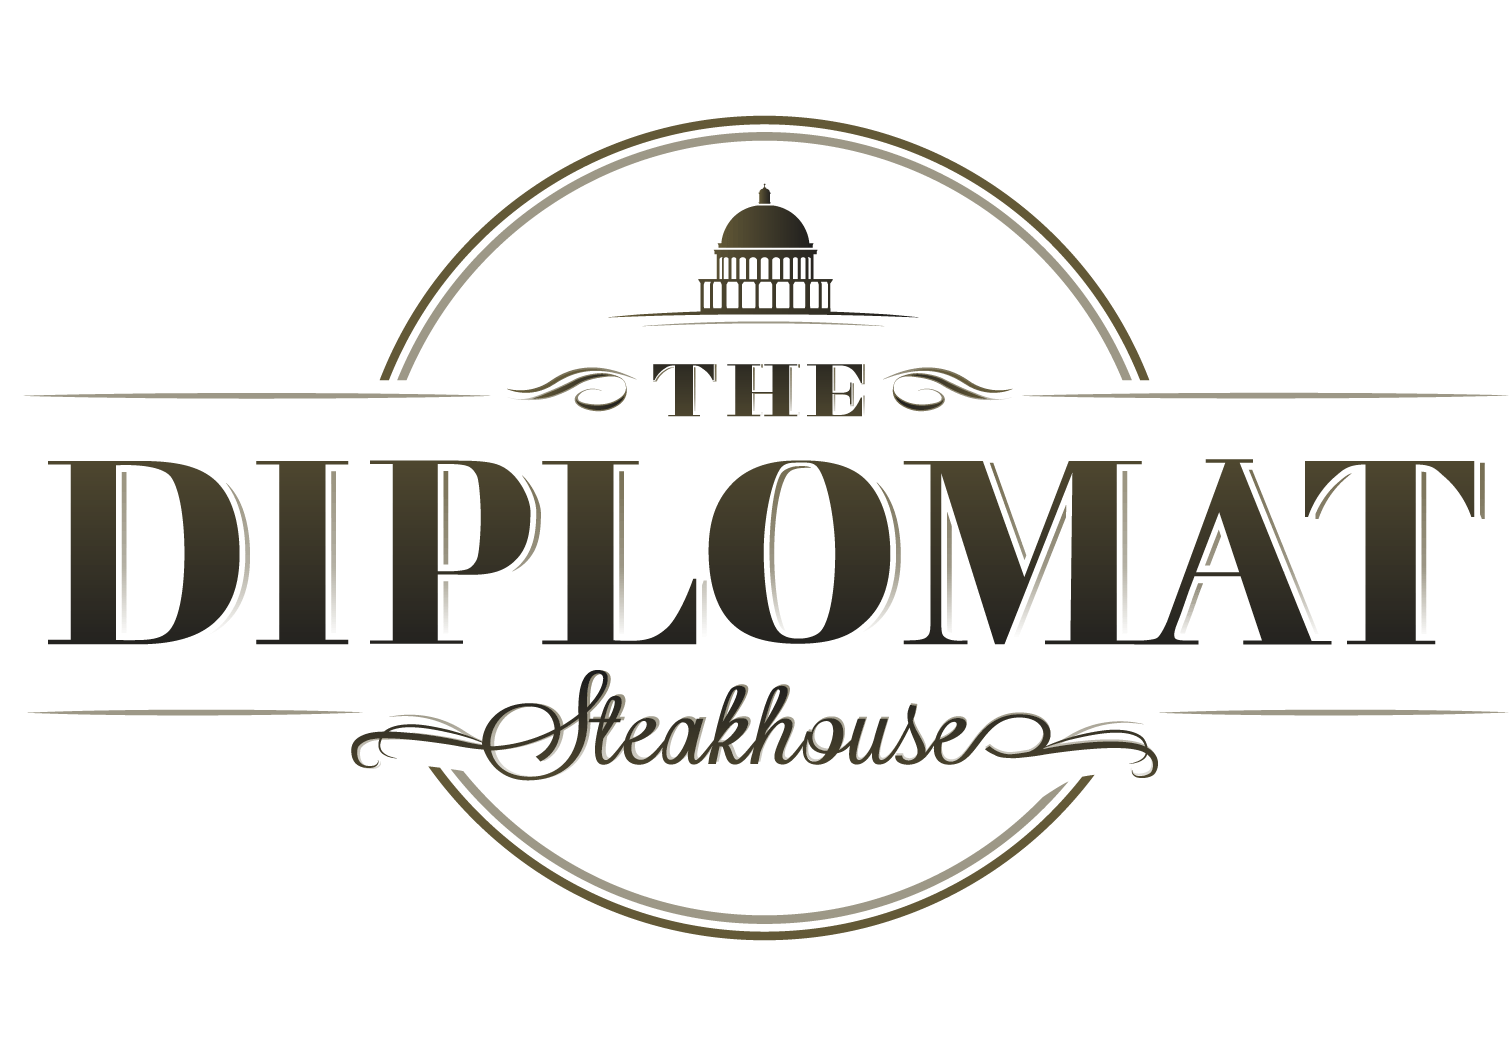 Steakhouse Logo - Home Diplomat Steakhouse